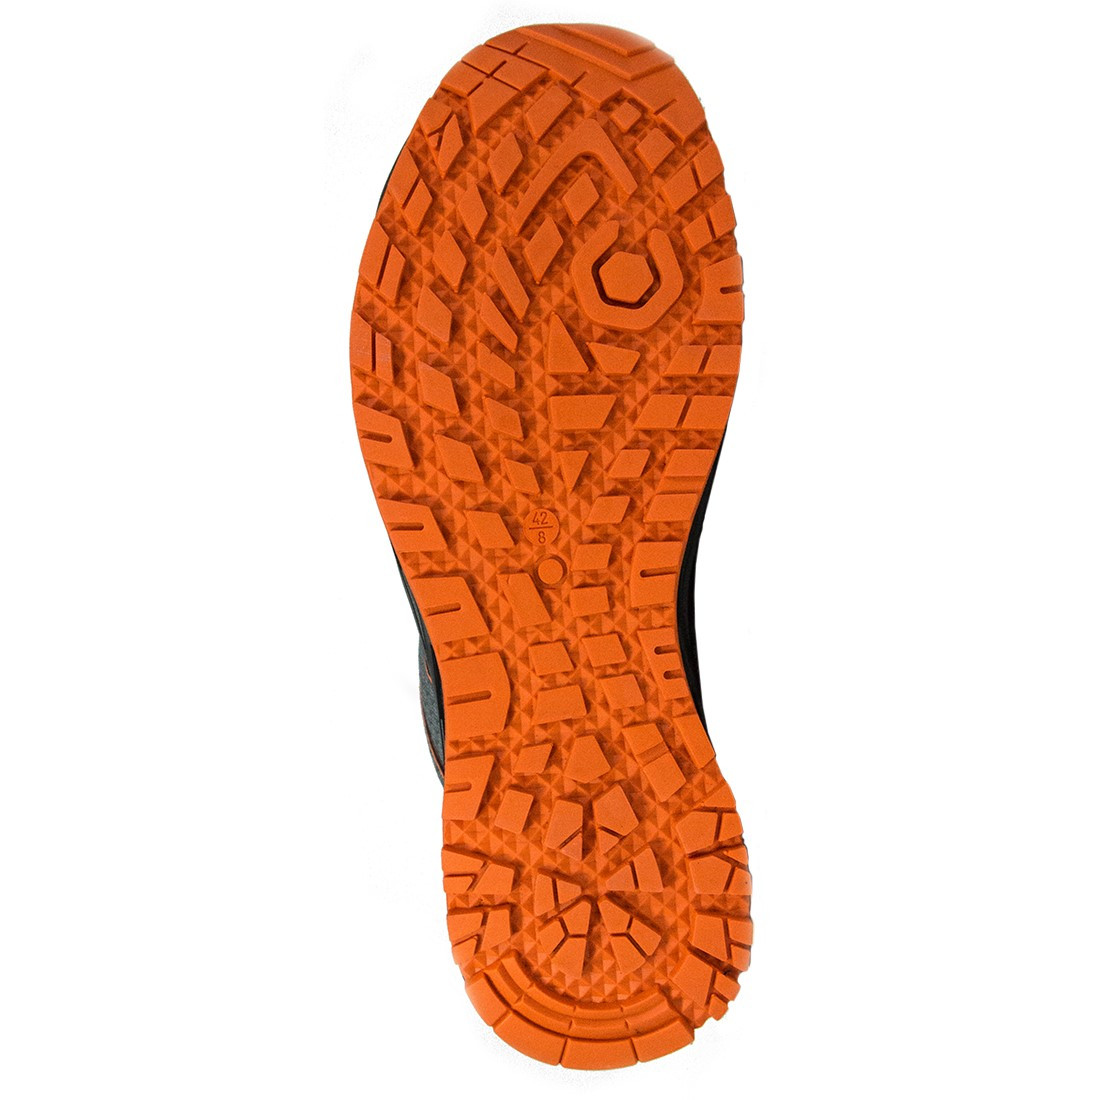 Pantofi K-Move S1P HRO SRC - Incaltaminte de protectie | Bocanci, Pantofi, Sandale, Cizme